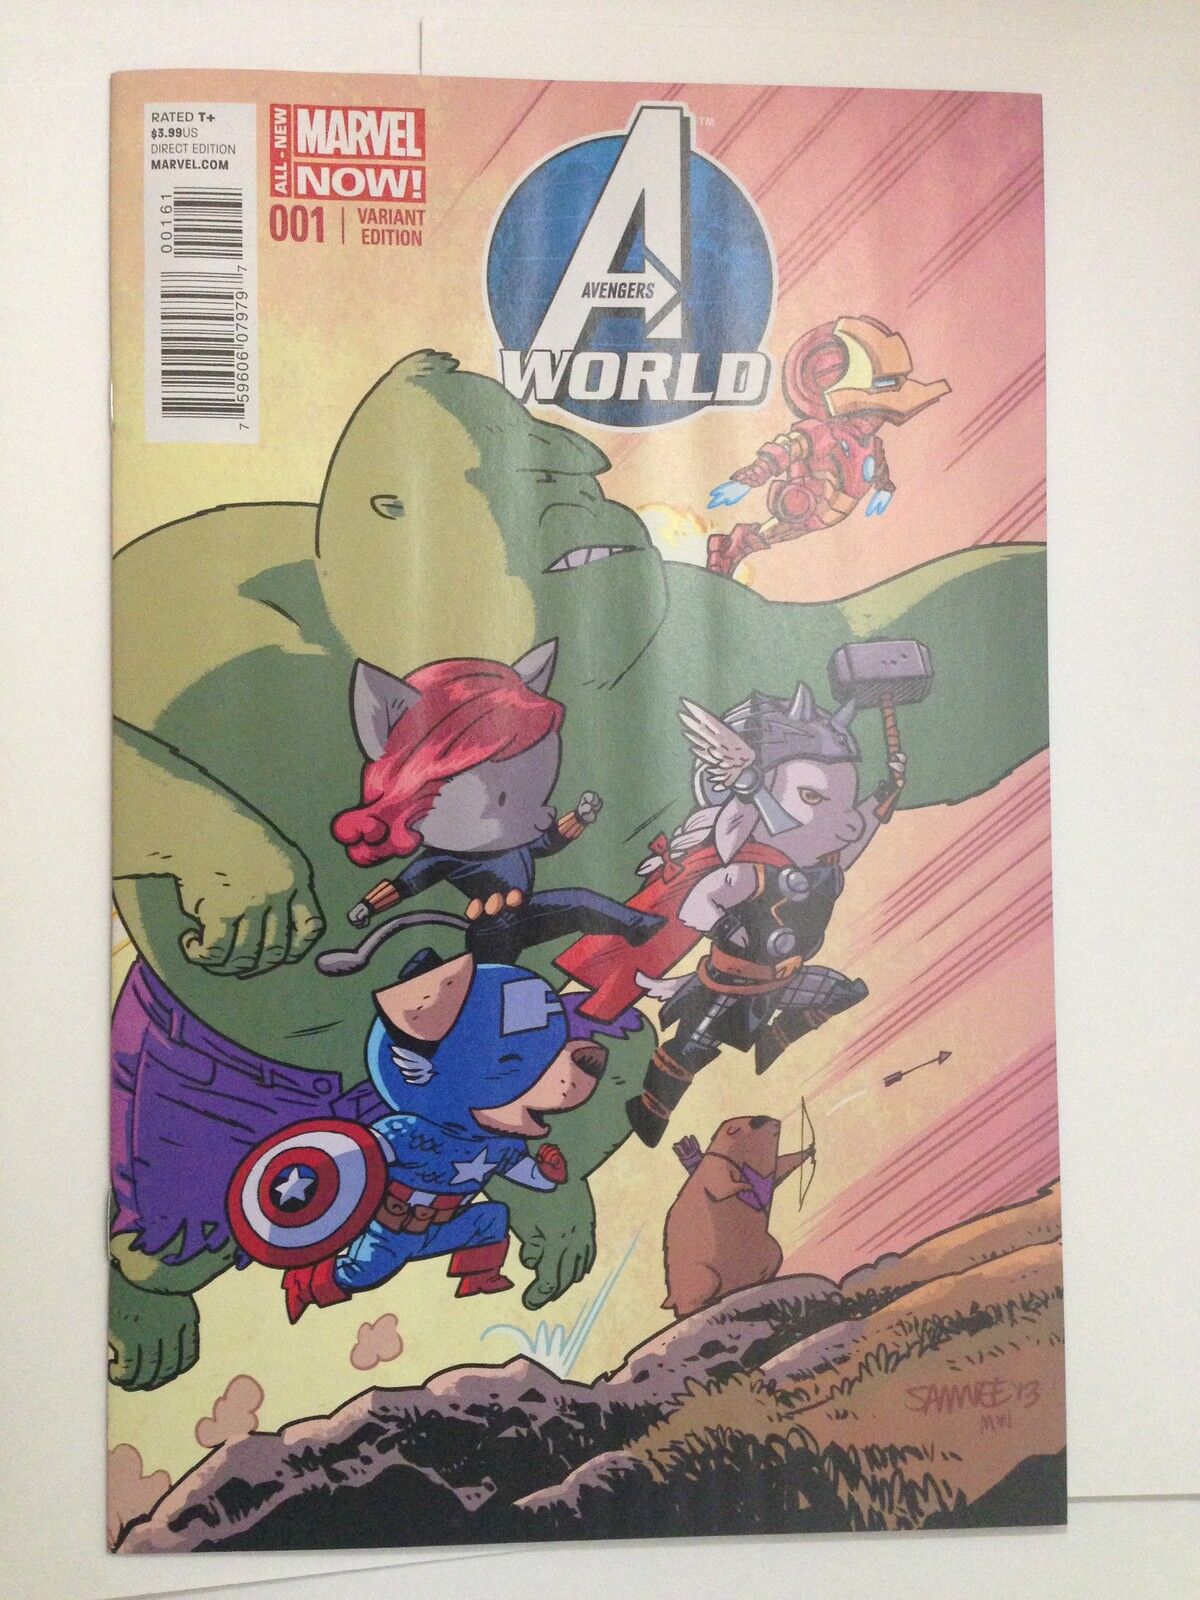 AVENGERS WORLD #1 Marvel Now! SAMNEE ANIMAL VARIANT 1:25 NM - Marvel Comics  | eBay